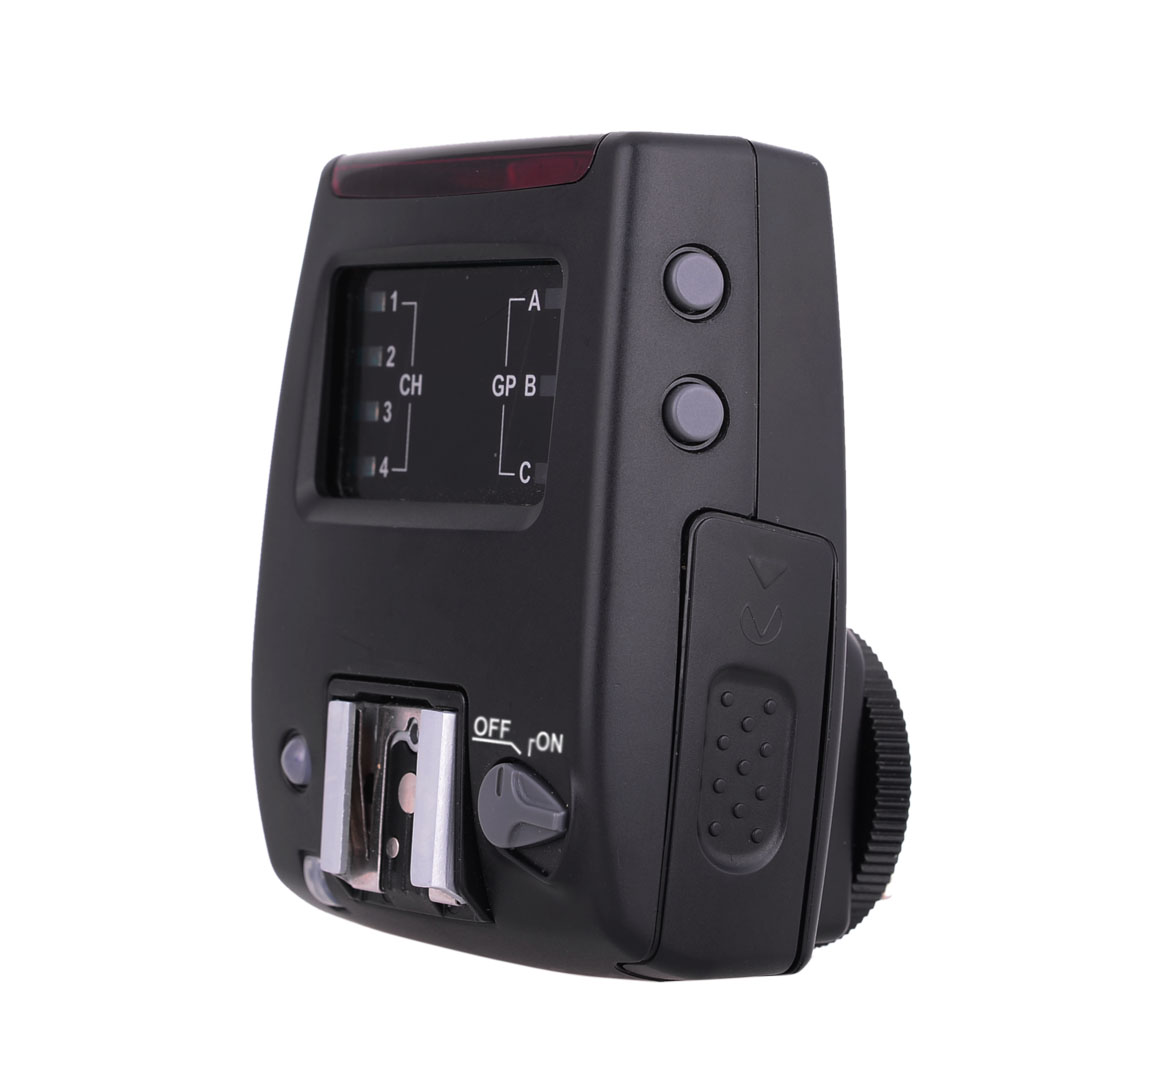 High Speed TTL Blitzauslöser-Set für Nikon und Speedlite (MK-GT600N)